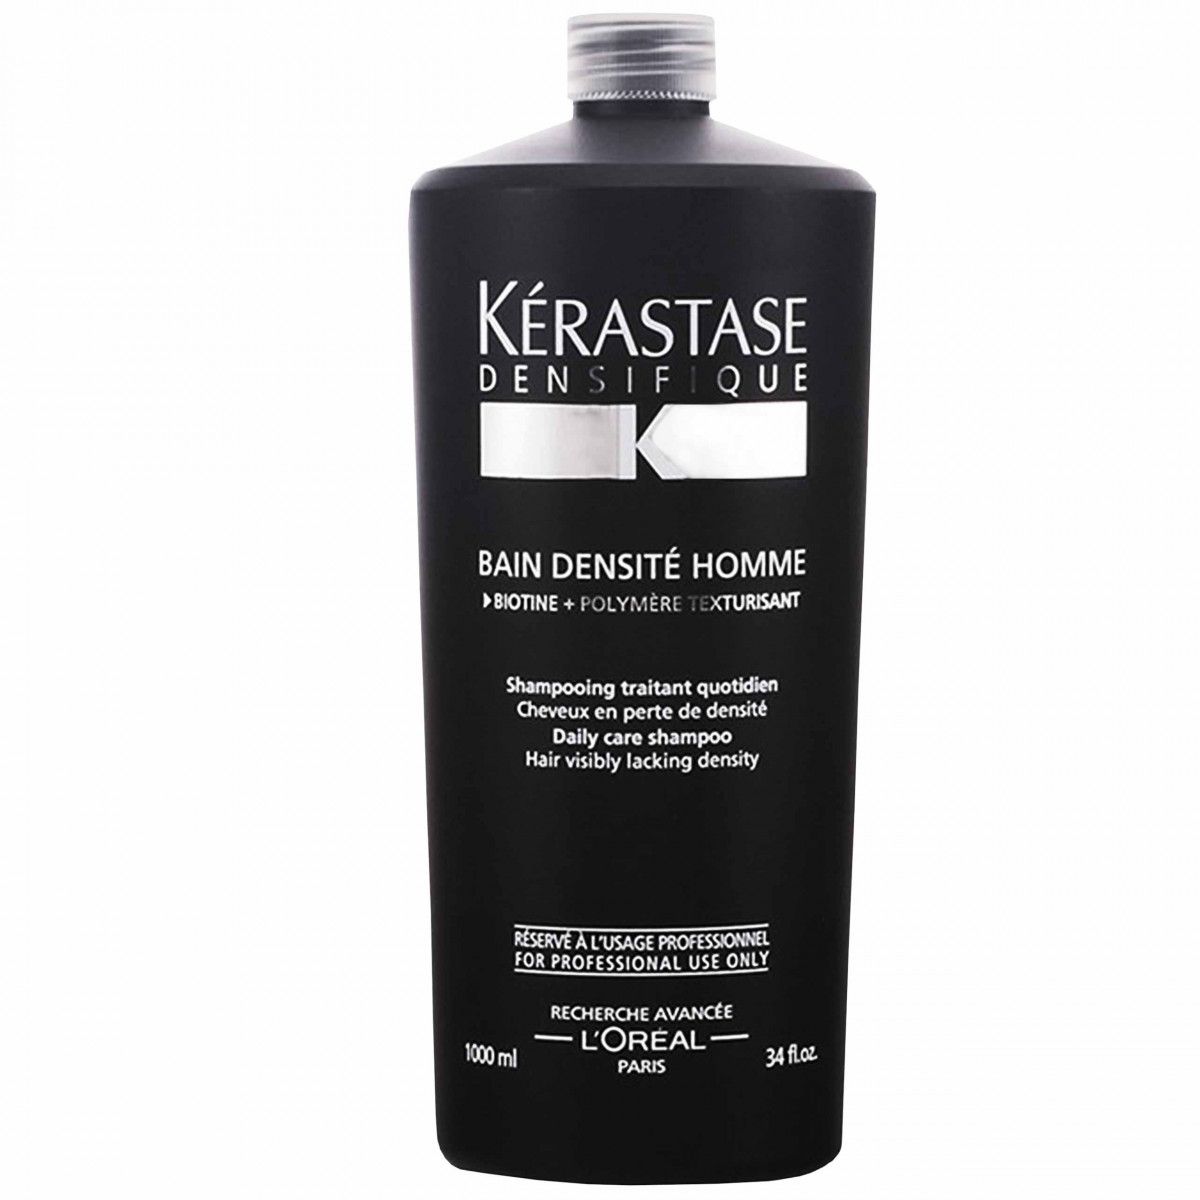 Kerastase Homme Densite szampon na objętość włosów dla mężczyzn 1000ml